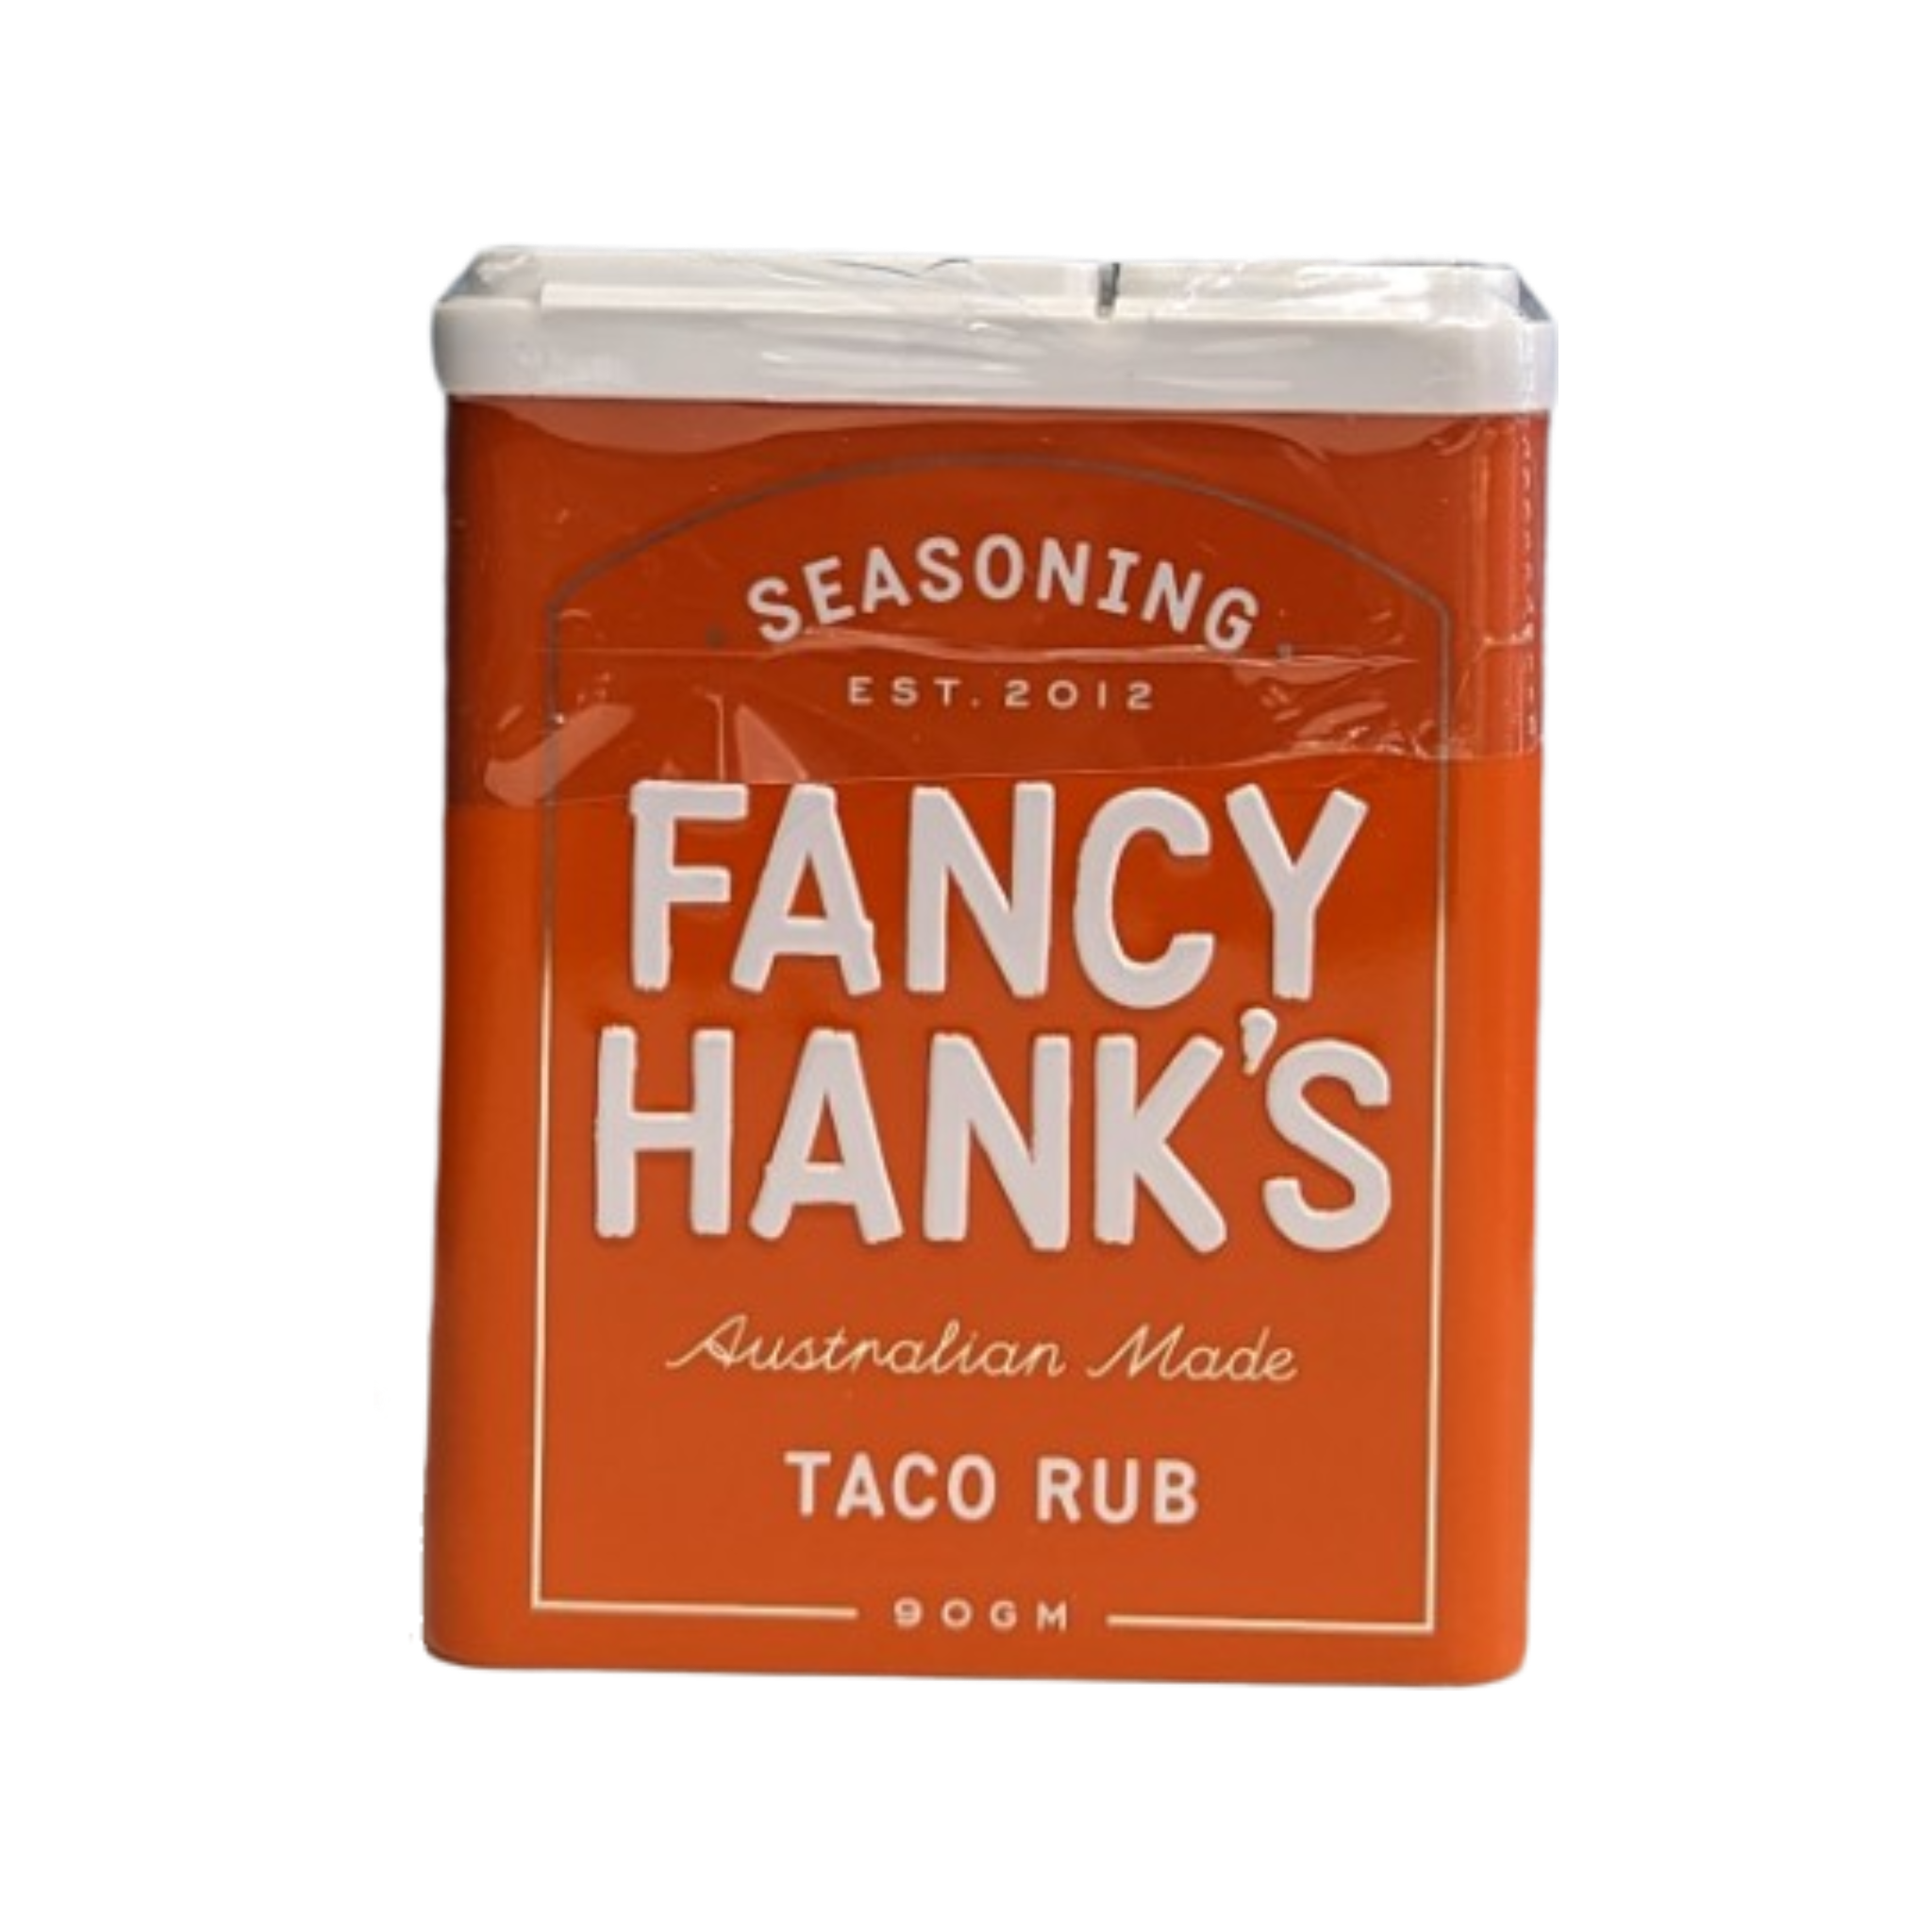 Fancy Hank's Taco Rub